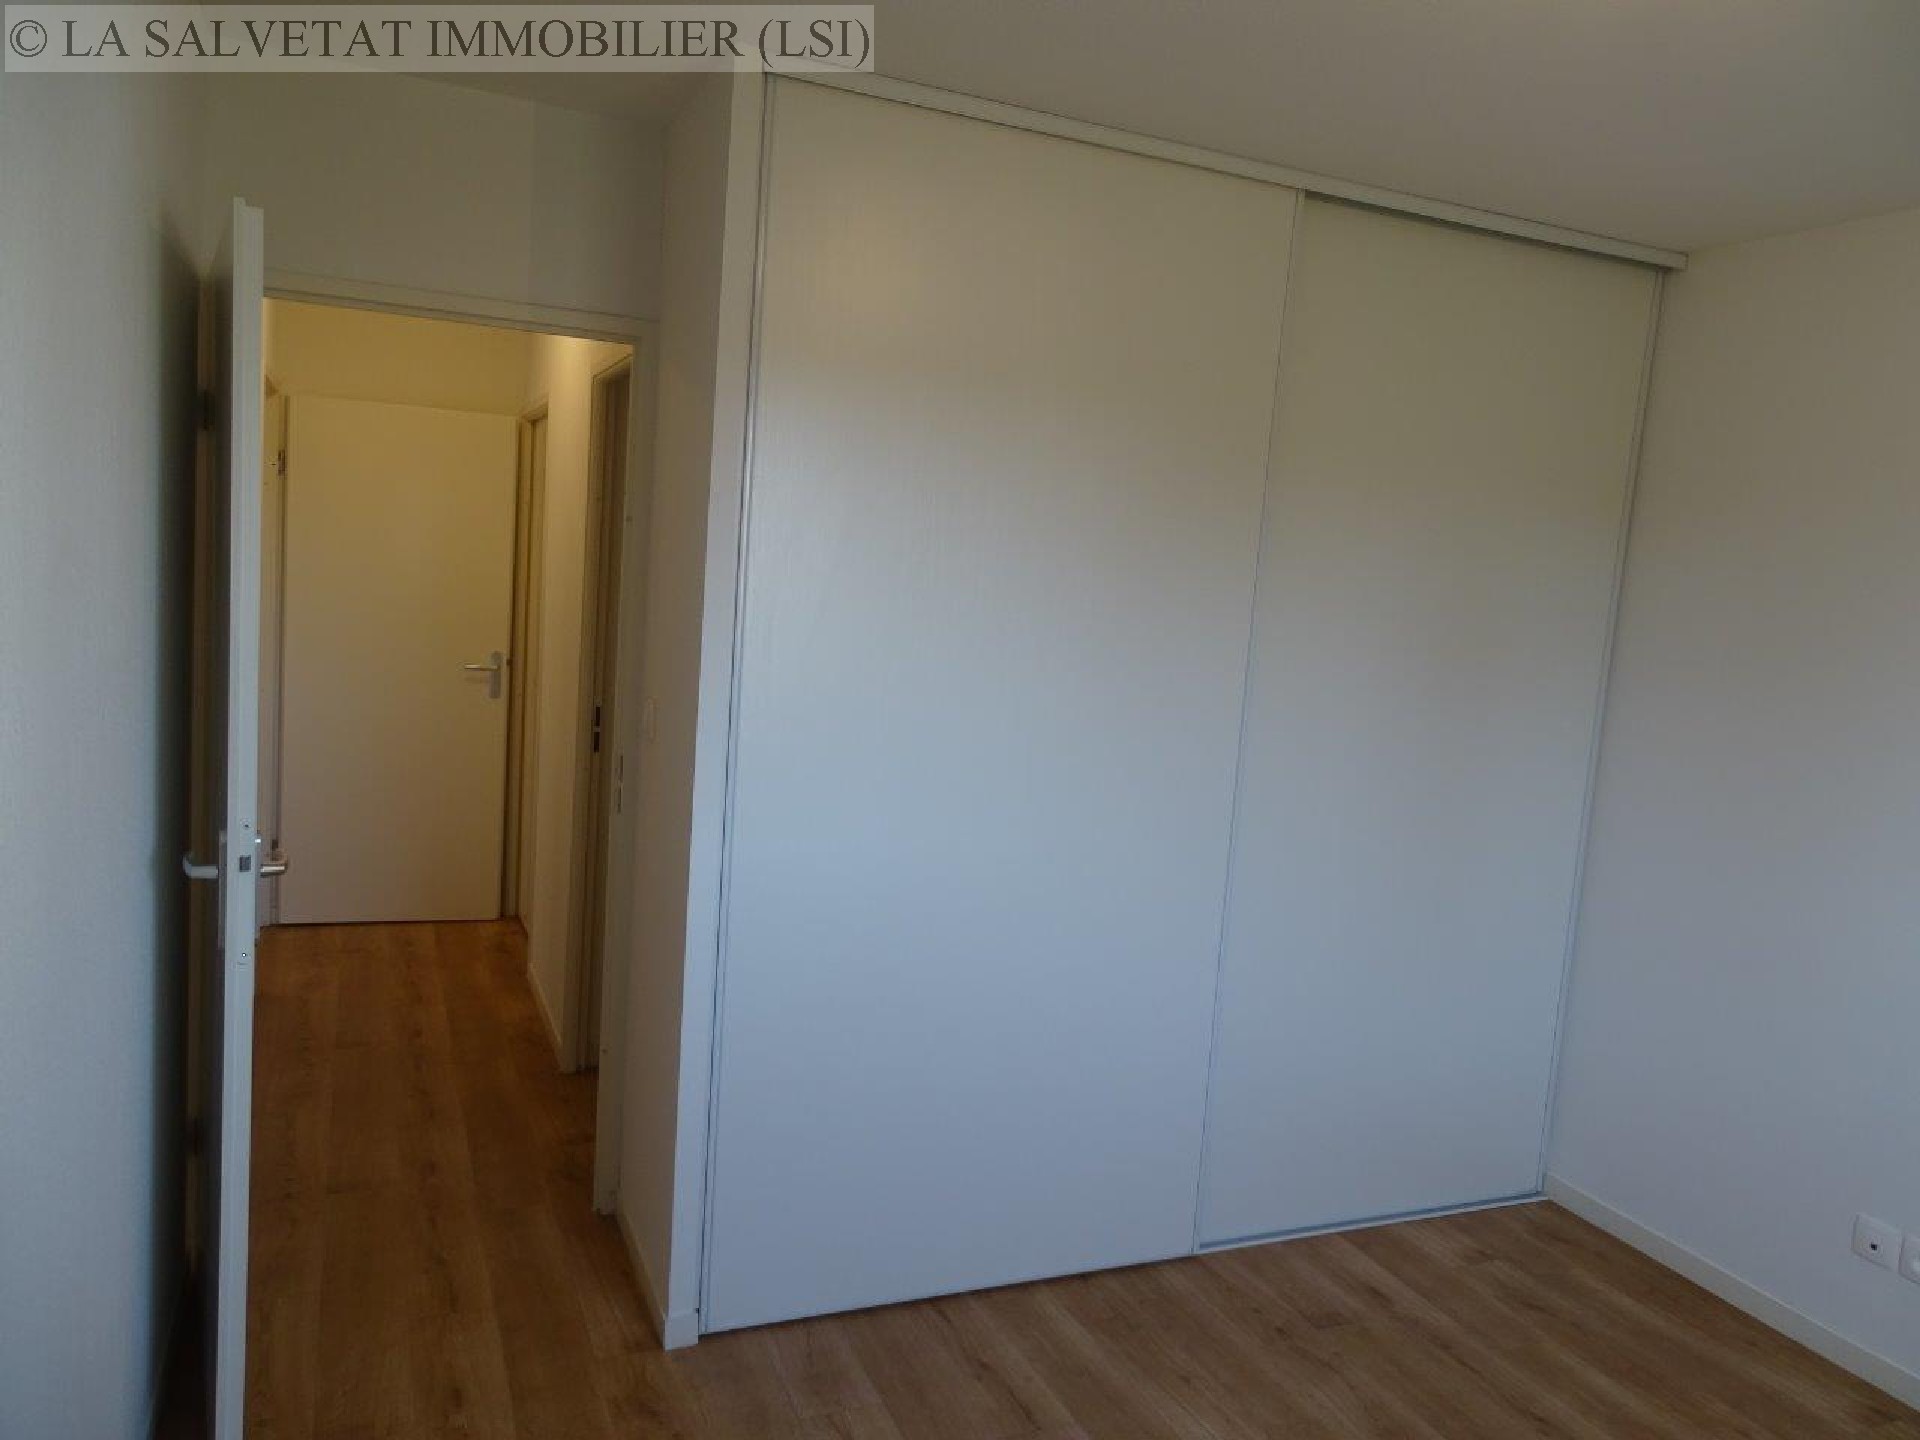 Location appartement - LA SALVETAT ST GILLES<br>42,81 m², 2 pièces